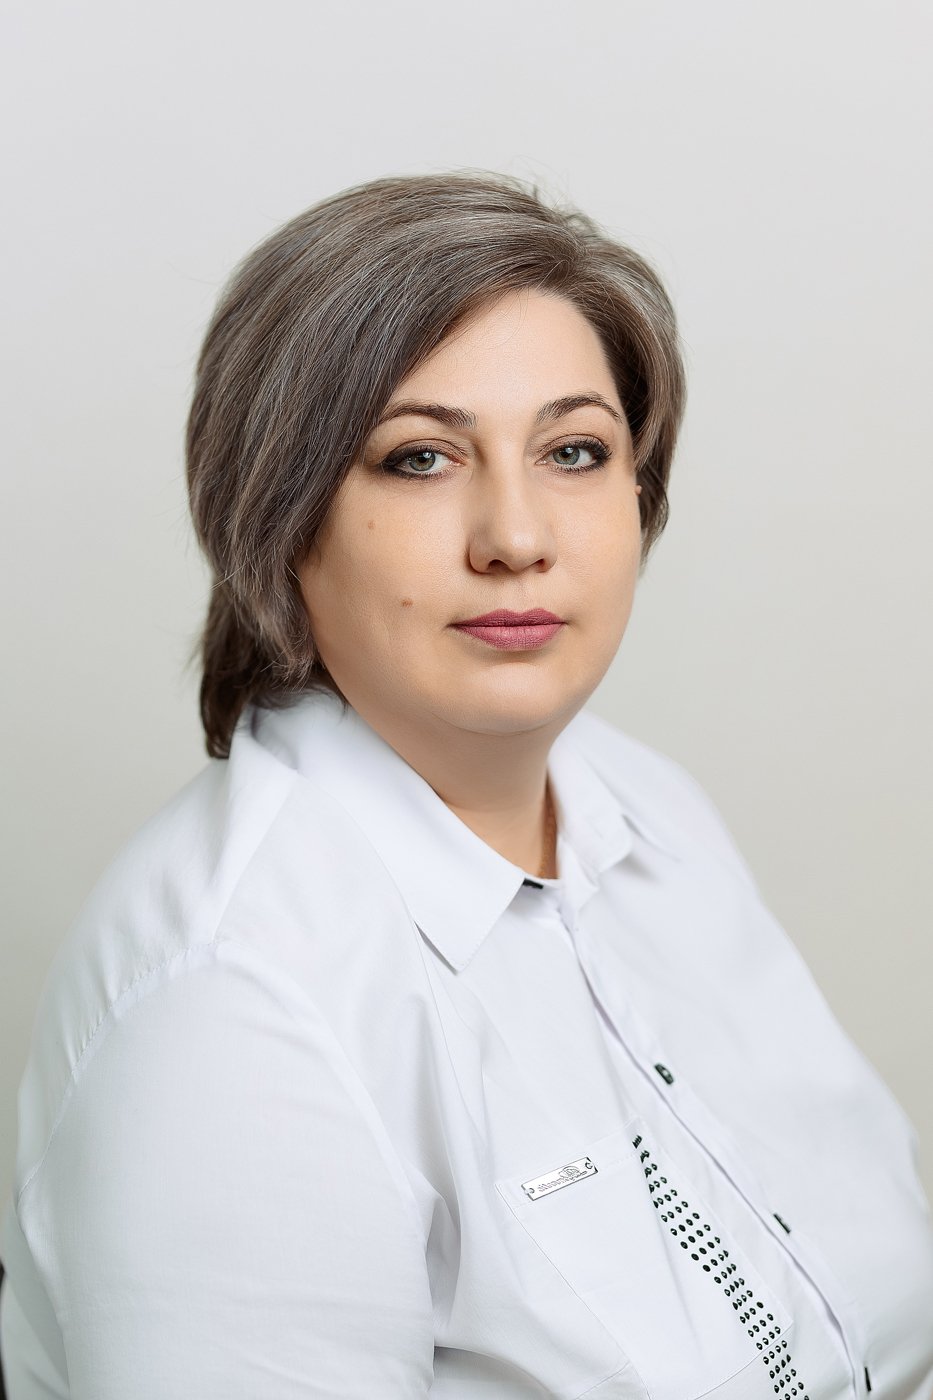 ШИШКОВА Елена Николаевна (11 июня 1981 года).